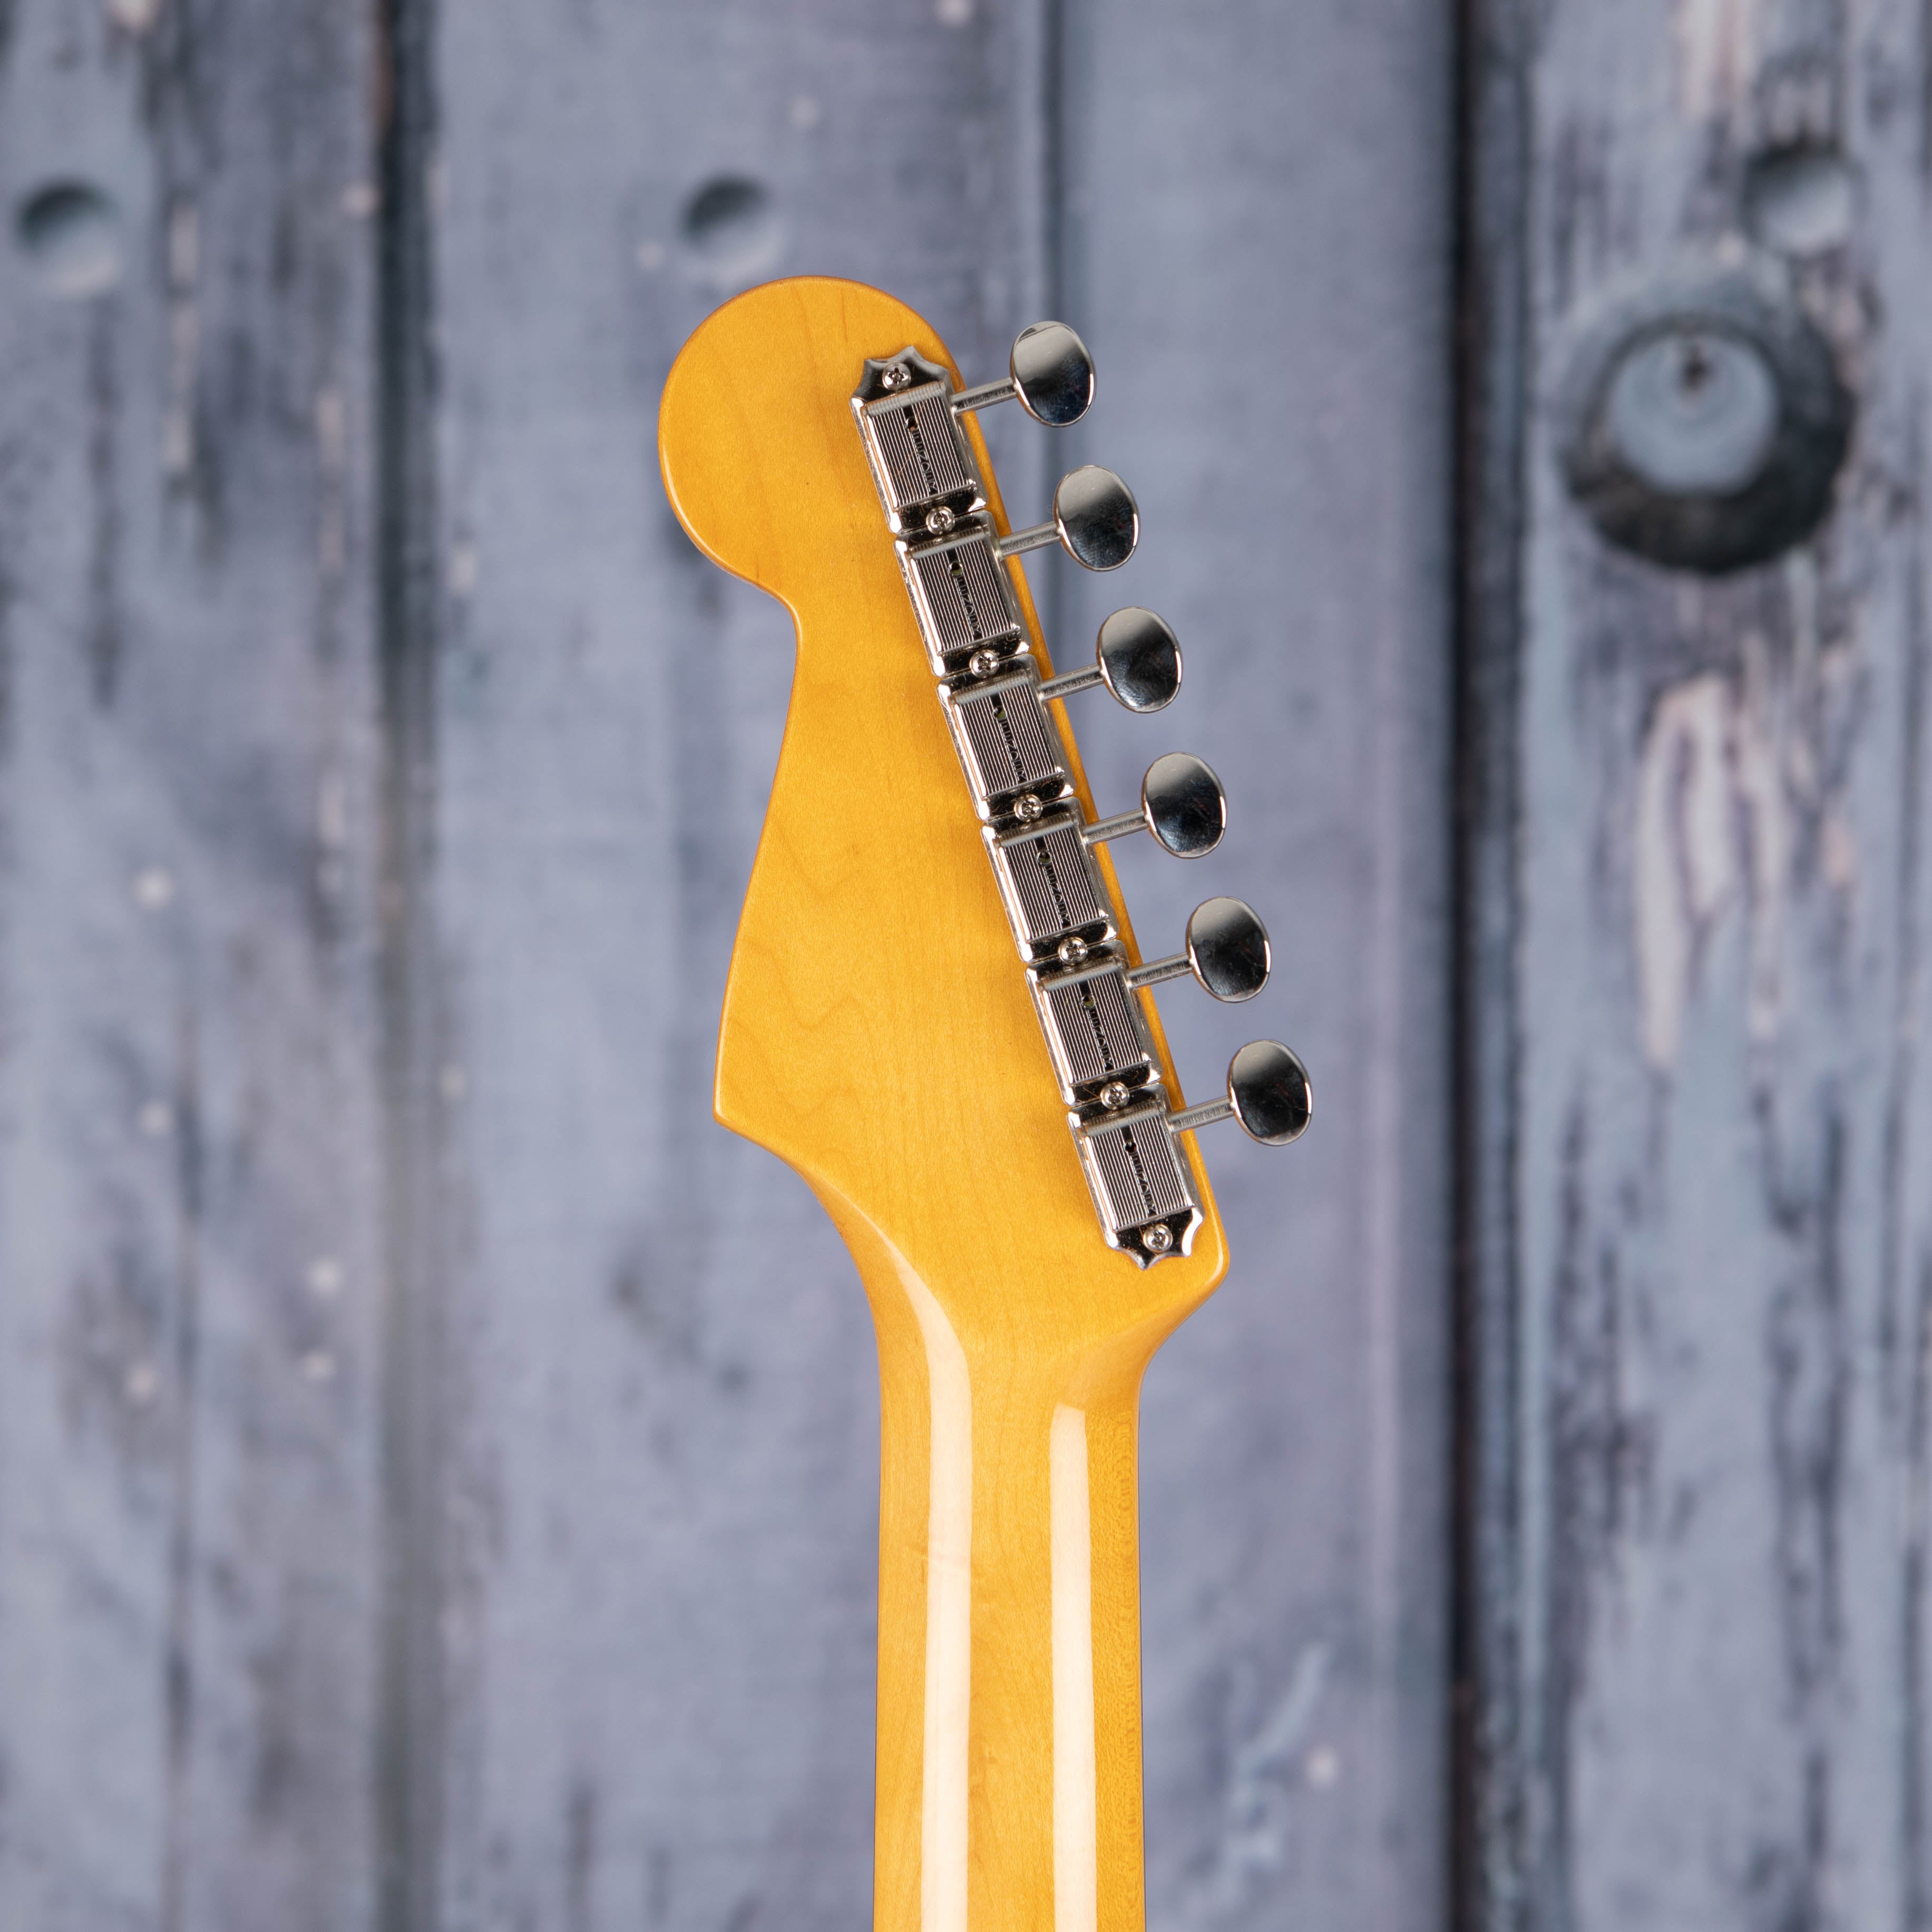 Fender American Vintage II 1961 Stratocaster Electric Guitar, 3-Color Sunburst, back headstock